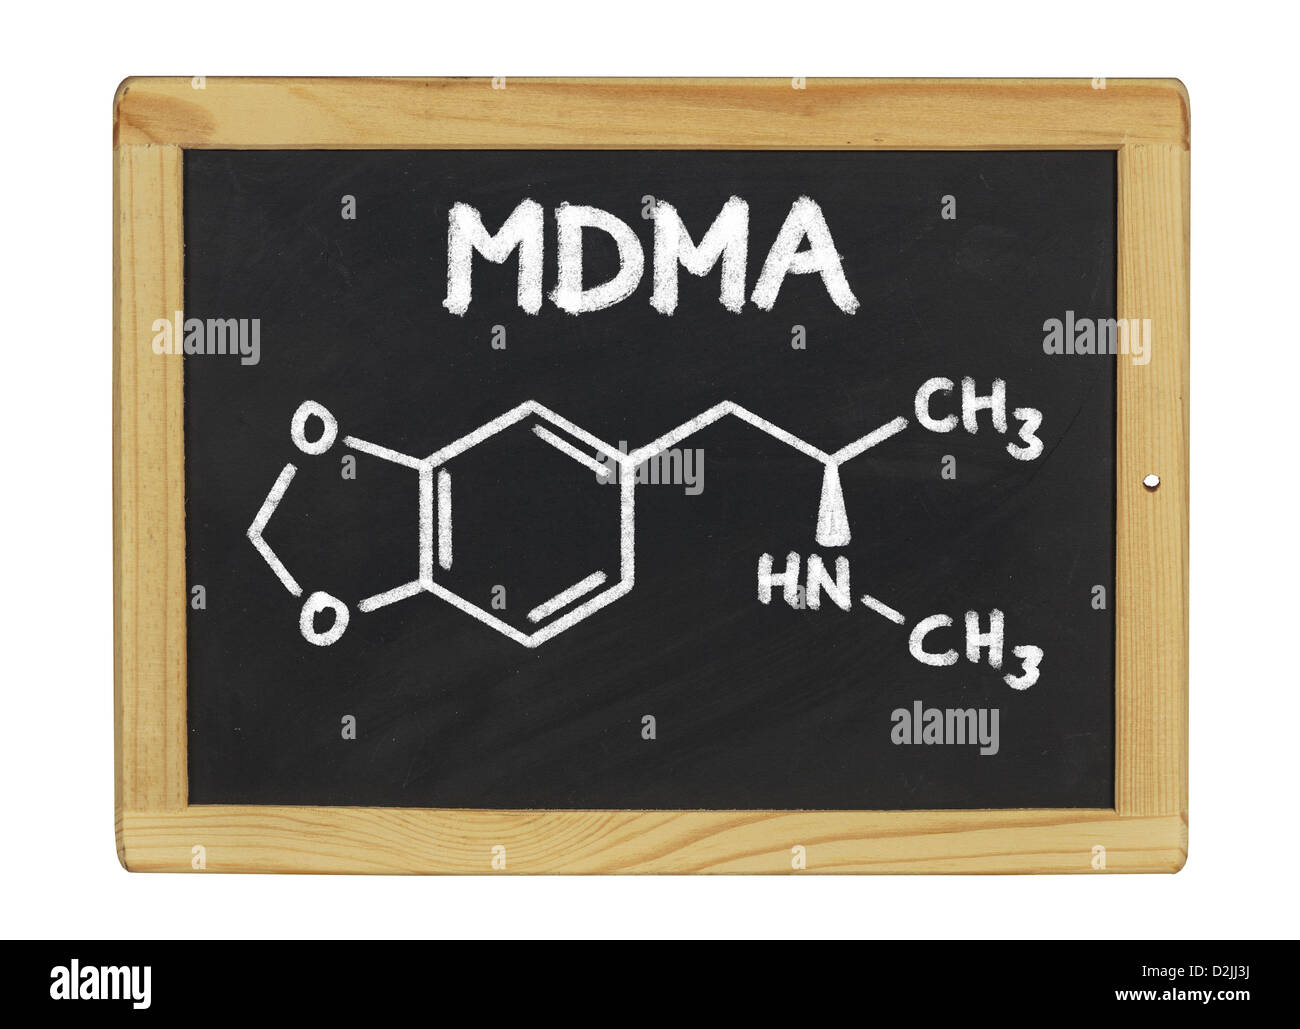 chemical formula of MDMA on a blackboard Stock Photo